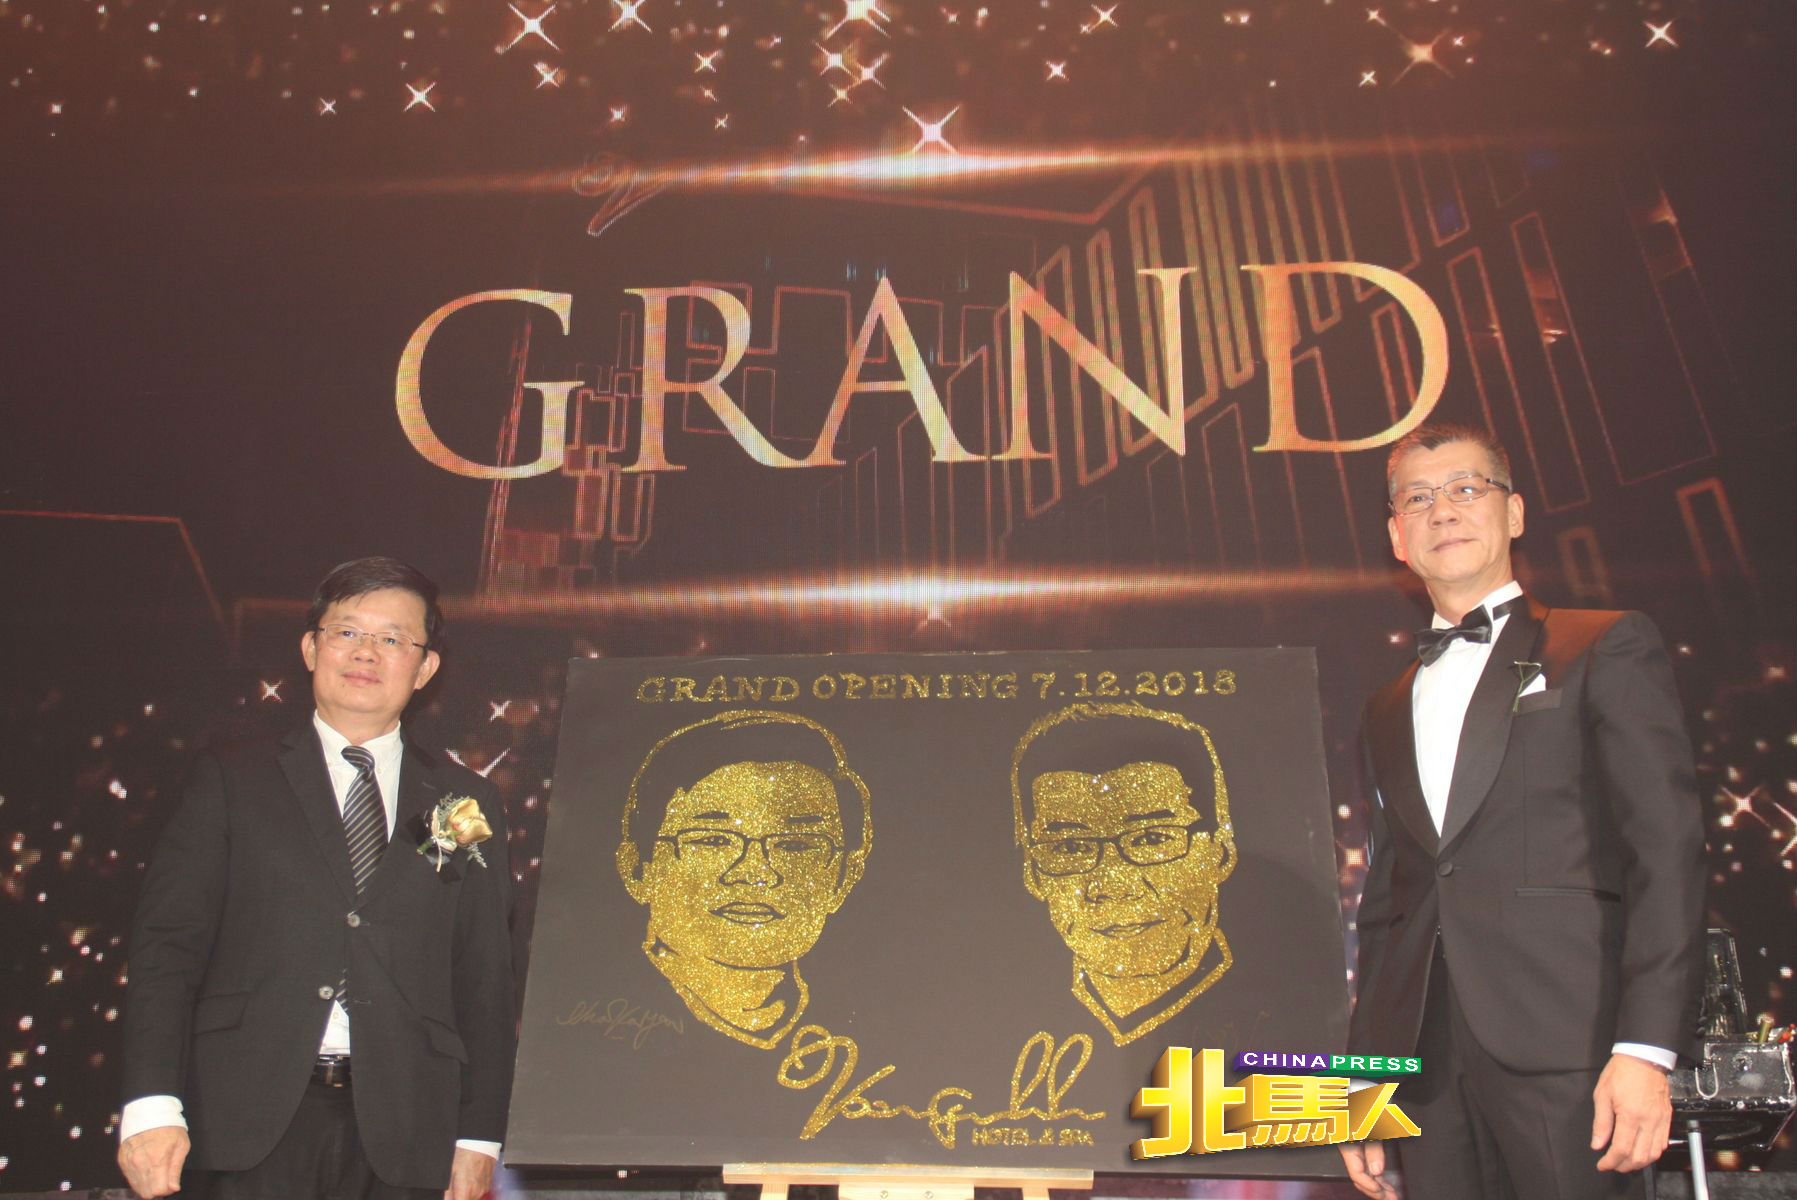 大会赠送金粉艺术肖像画给曹观友（左）及吴春锦两人，以作为纪念。